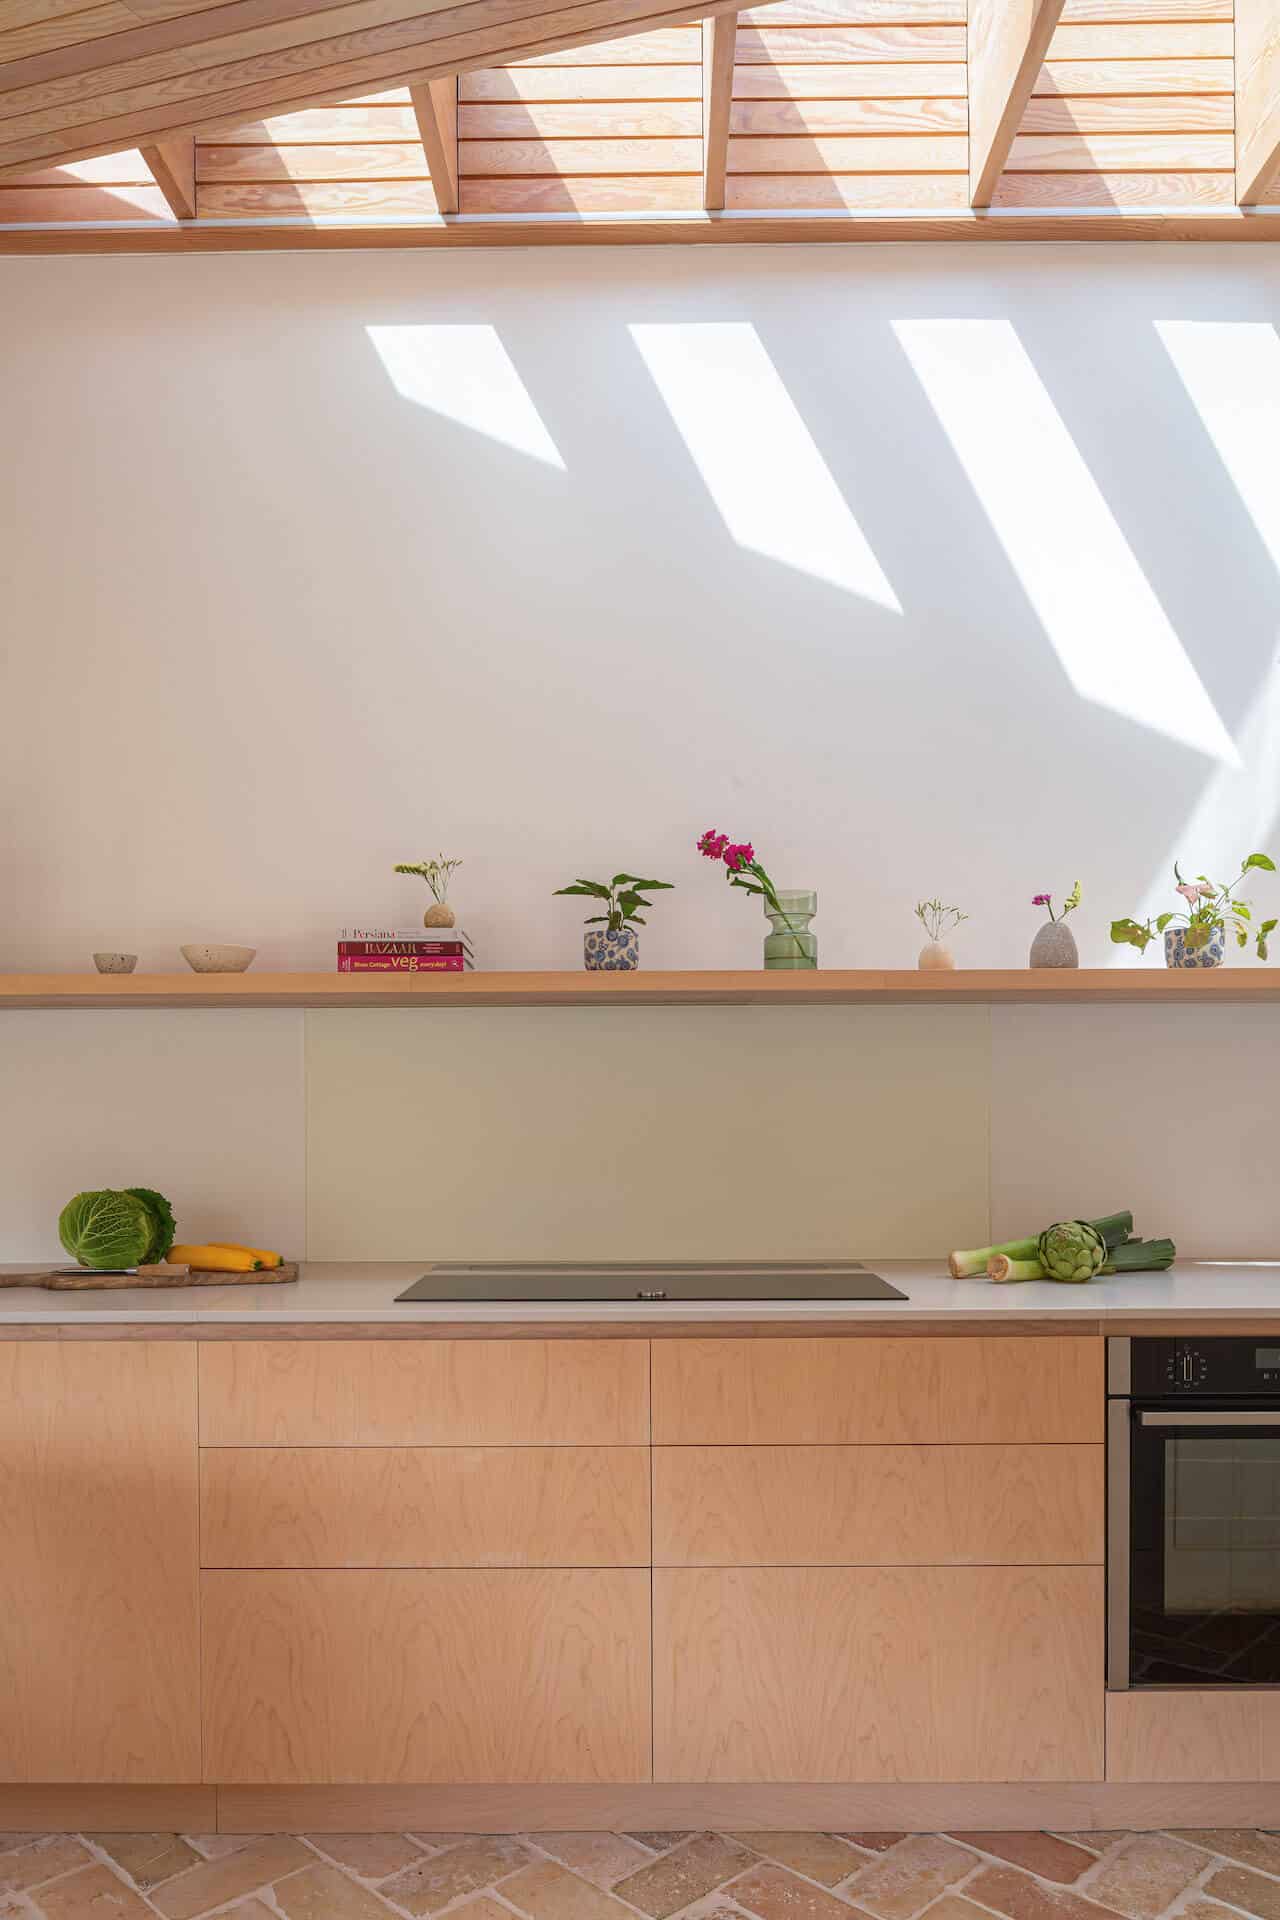 The Bristol Kitchen Extension - Veneer kitchen cabinets